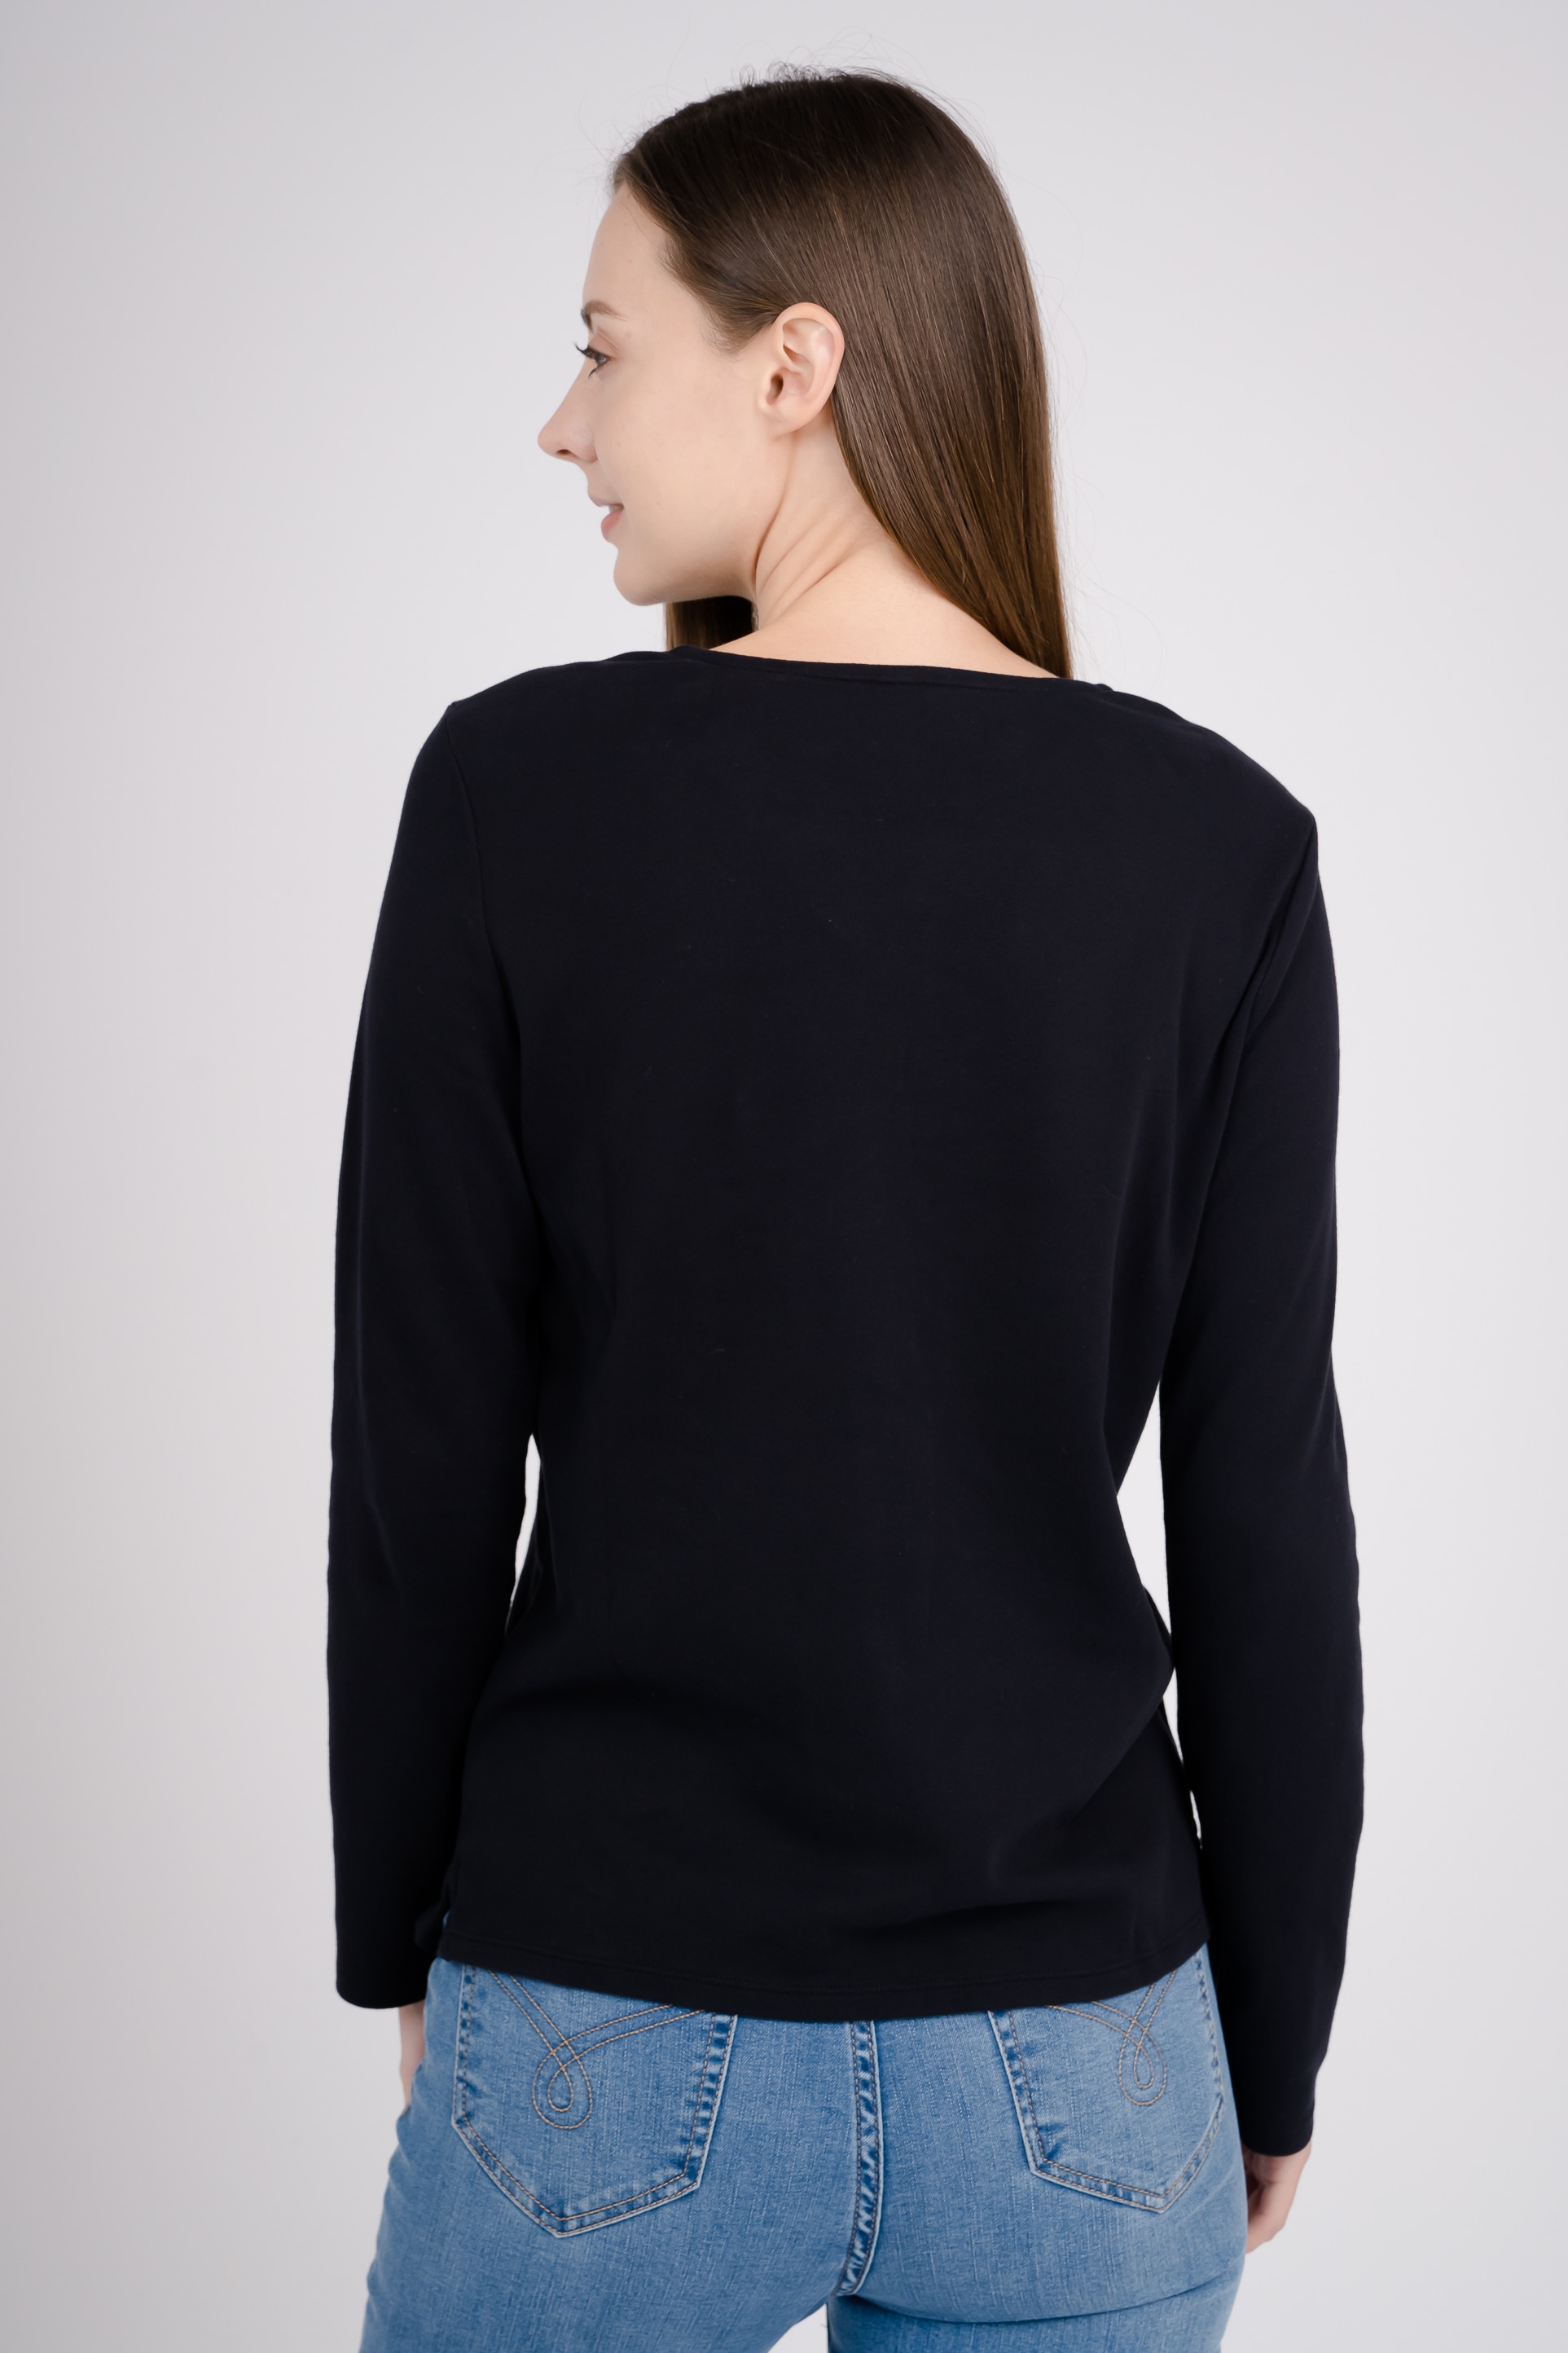 GIORDANO Langarmshirt, mit elastischem Material | kaufen I\'m online walking